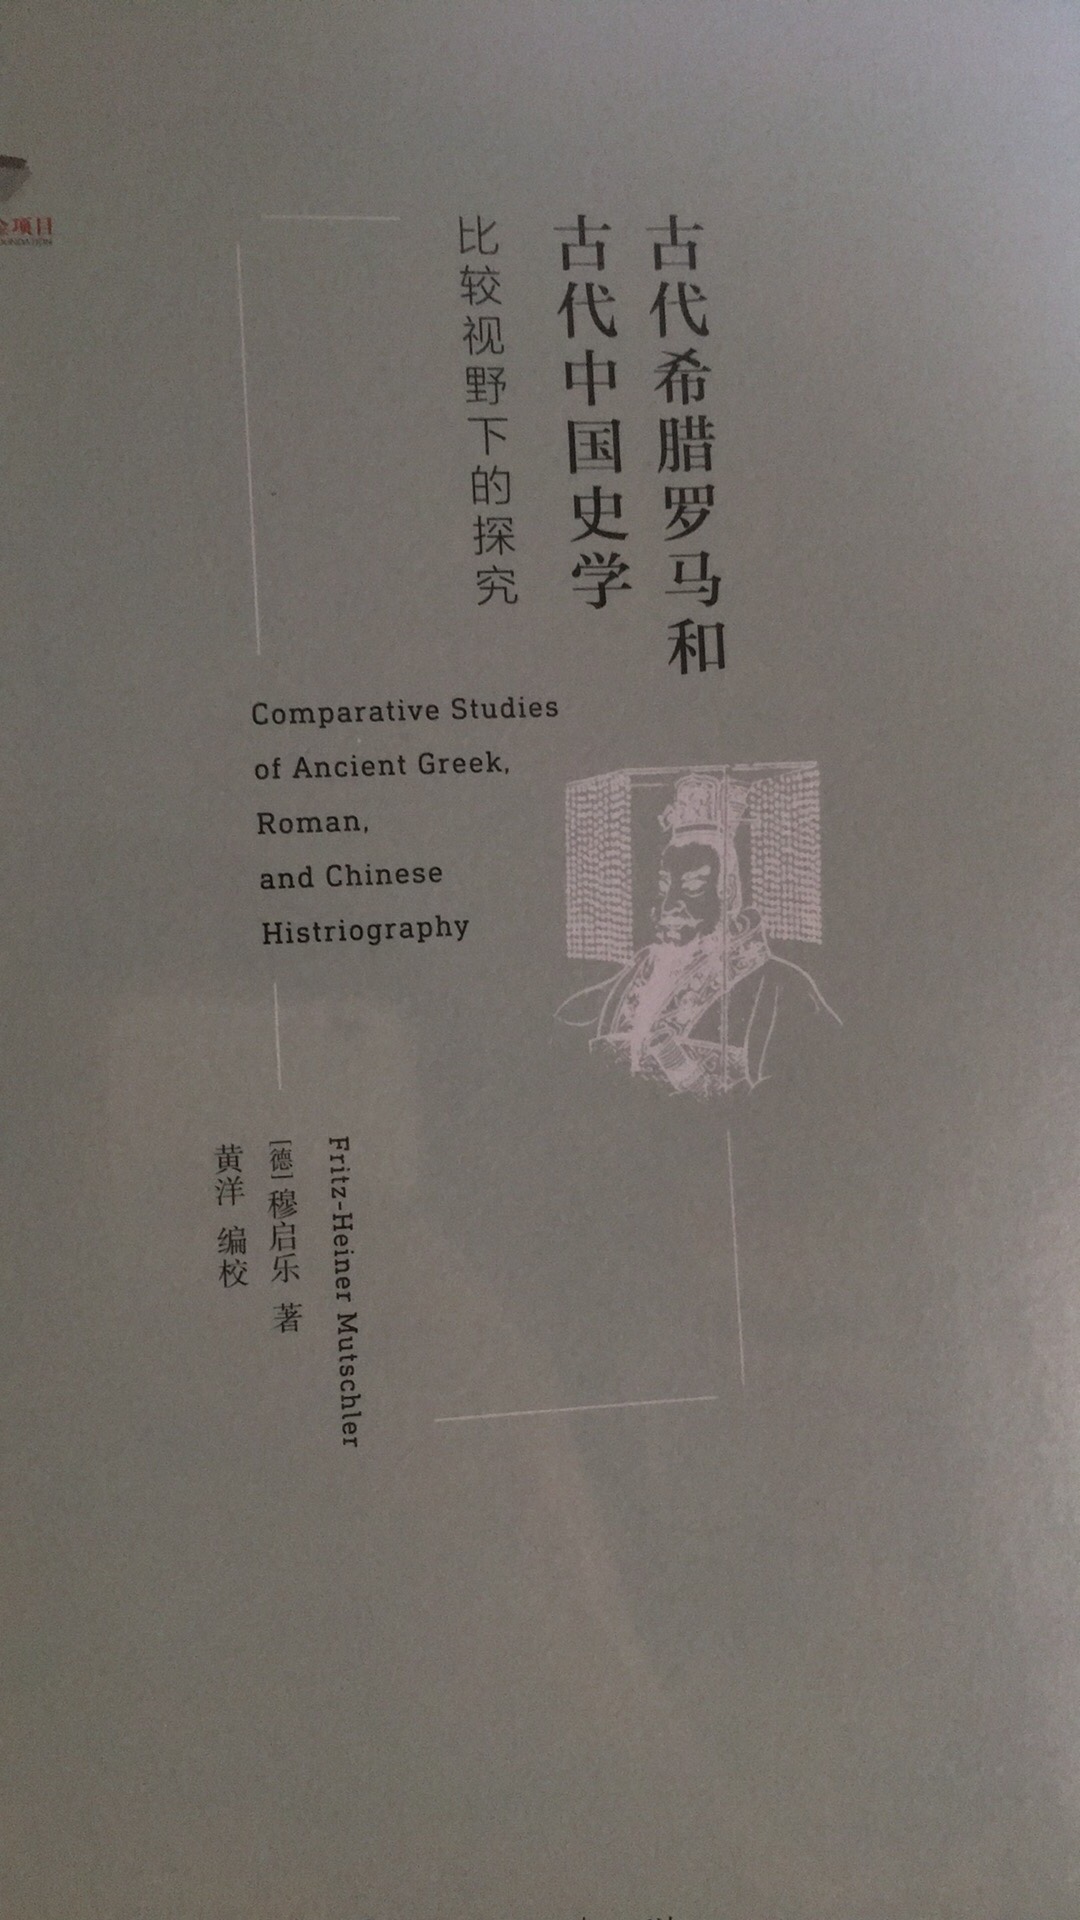 将一些古希腊罗马的史学家传世的文献与汉书史记等中国史学经典进行相互参照来进行比较。